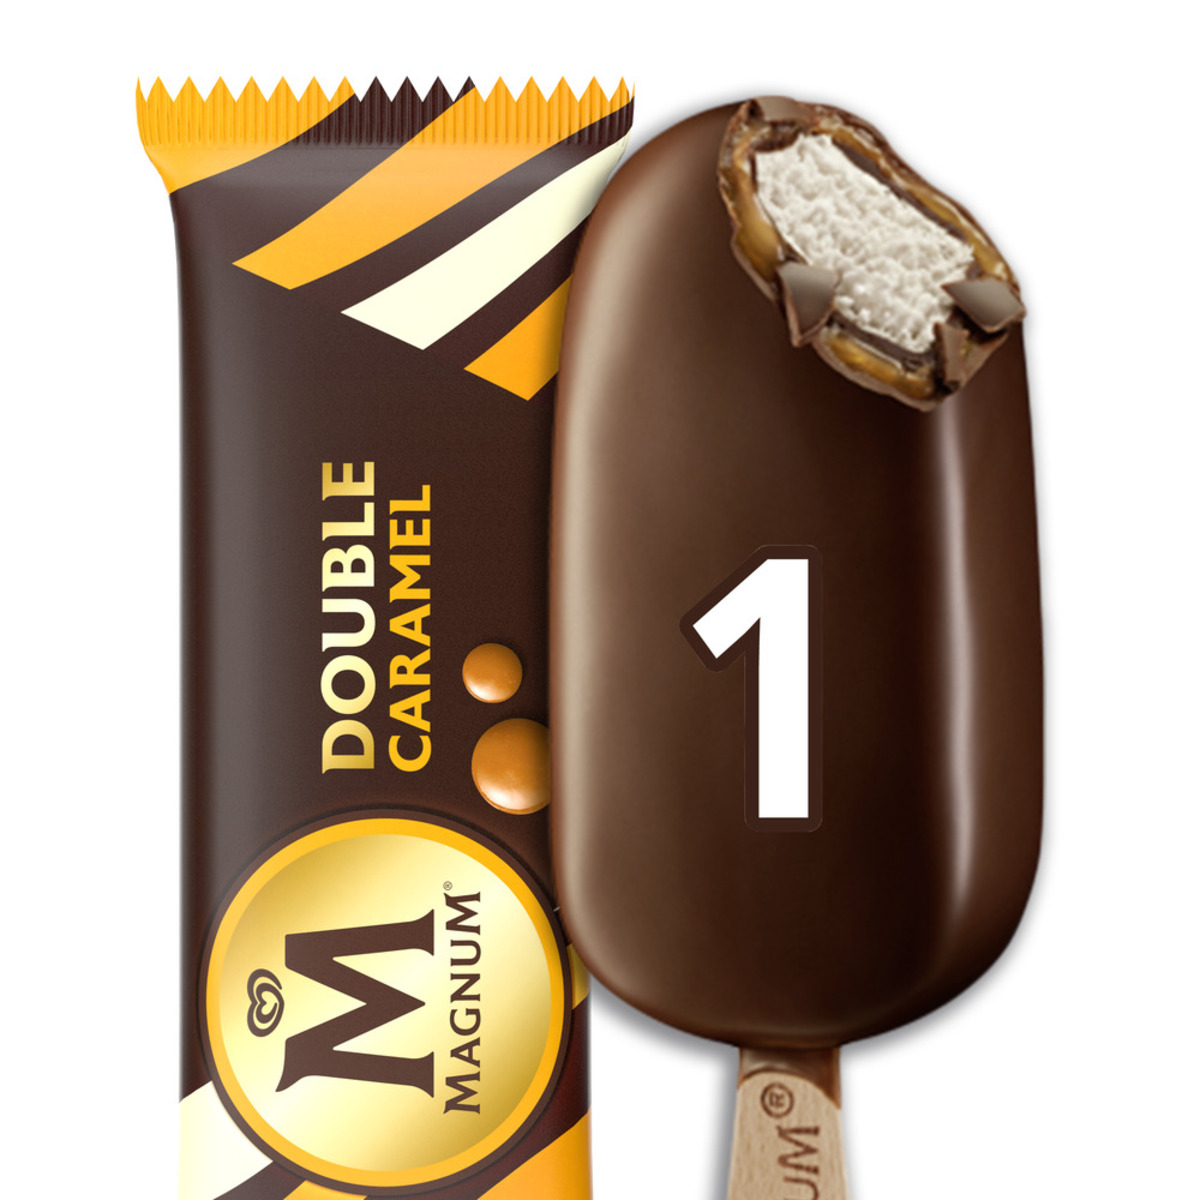 اشتري قم بشراء ماغنوم آيس كريم دبل كراميل 95 مل Online at Best Price من الموقع - من لولو هايبر ماركت Ice Cream Impulse في الامارات